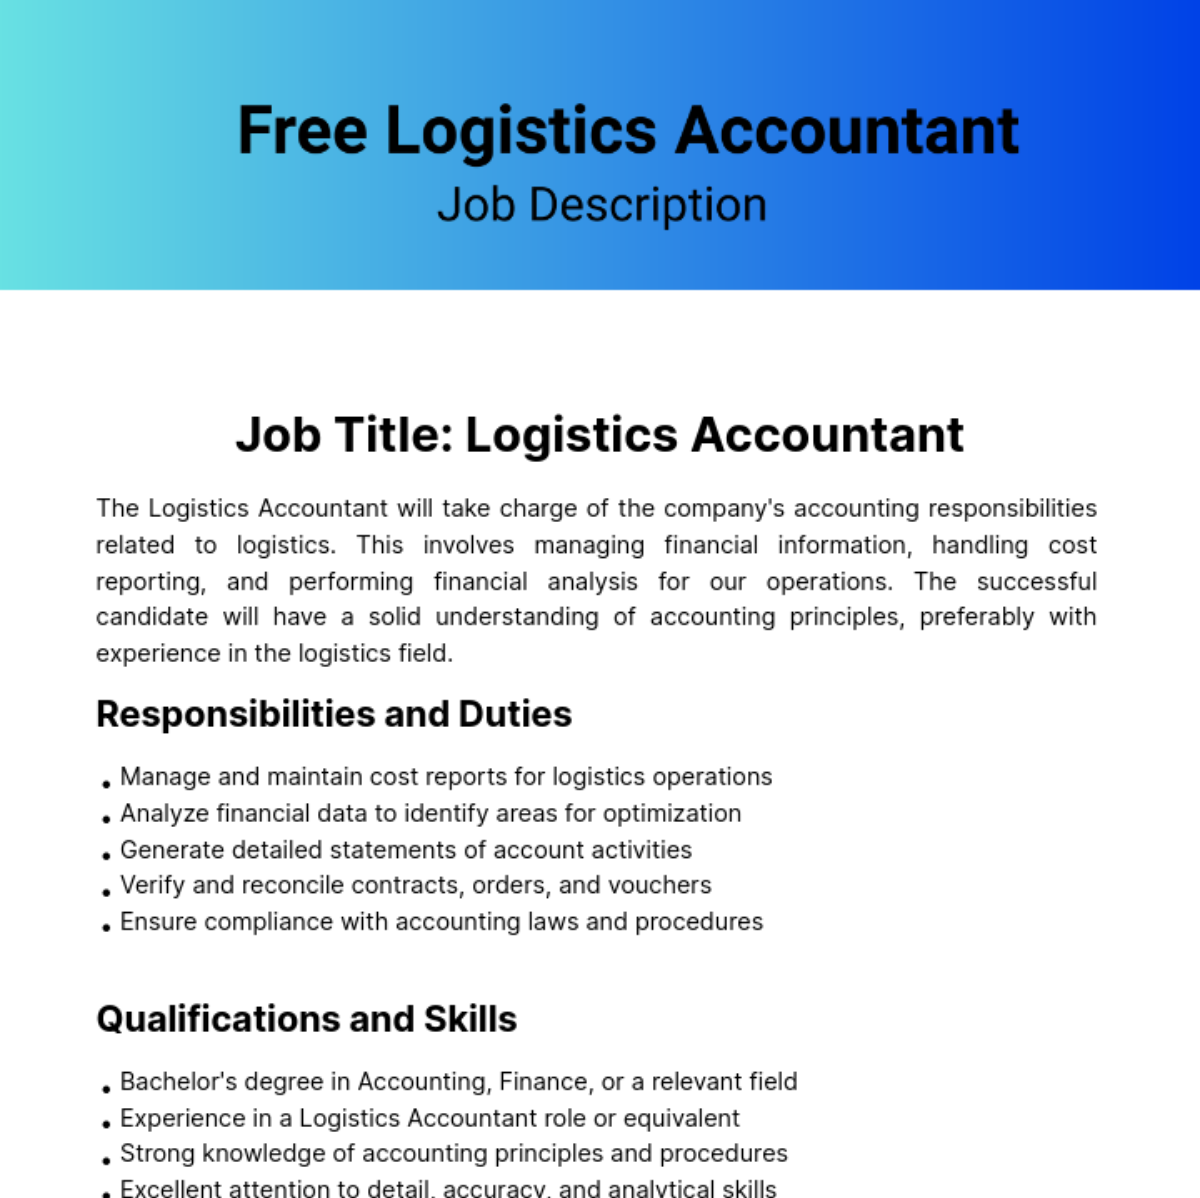 Free Logistics Accountant Job Description Template